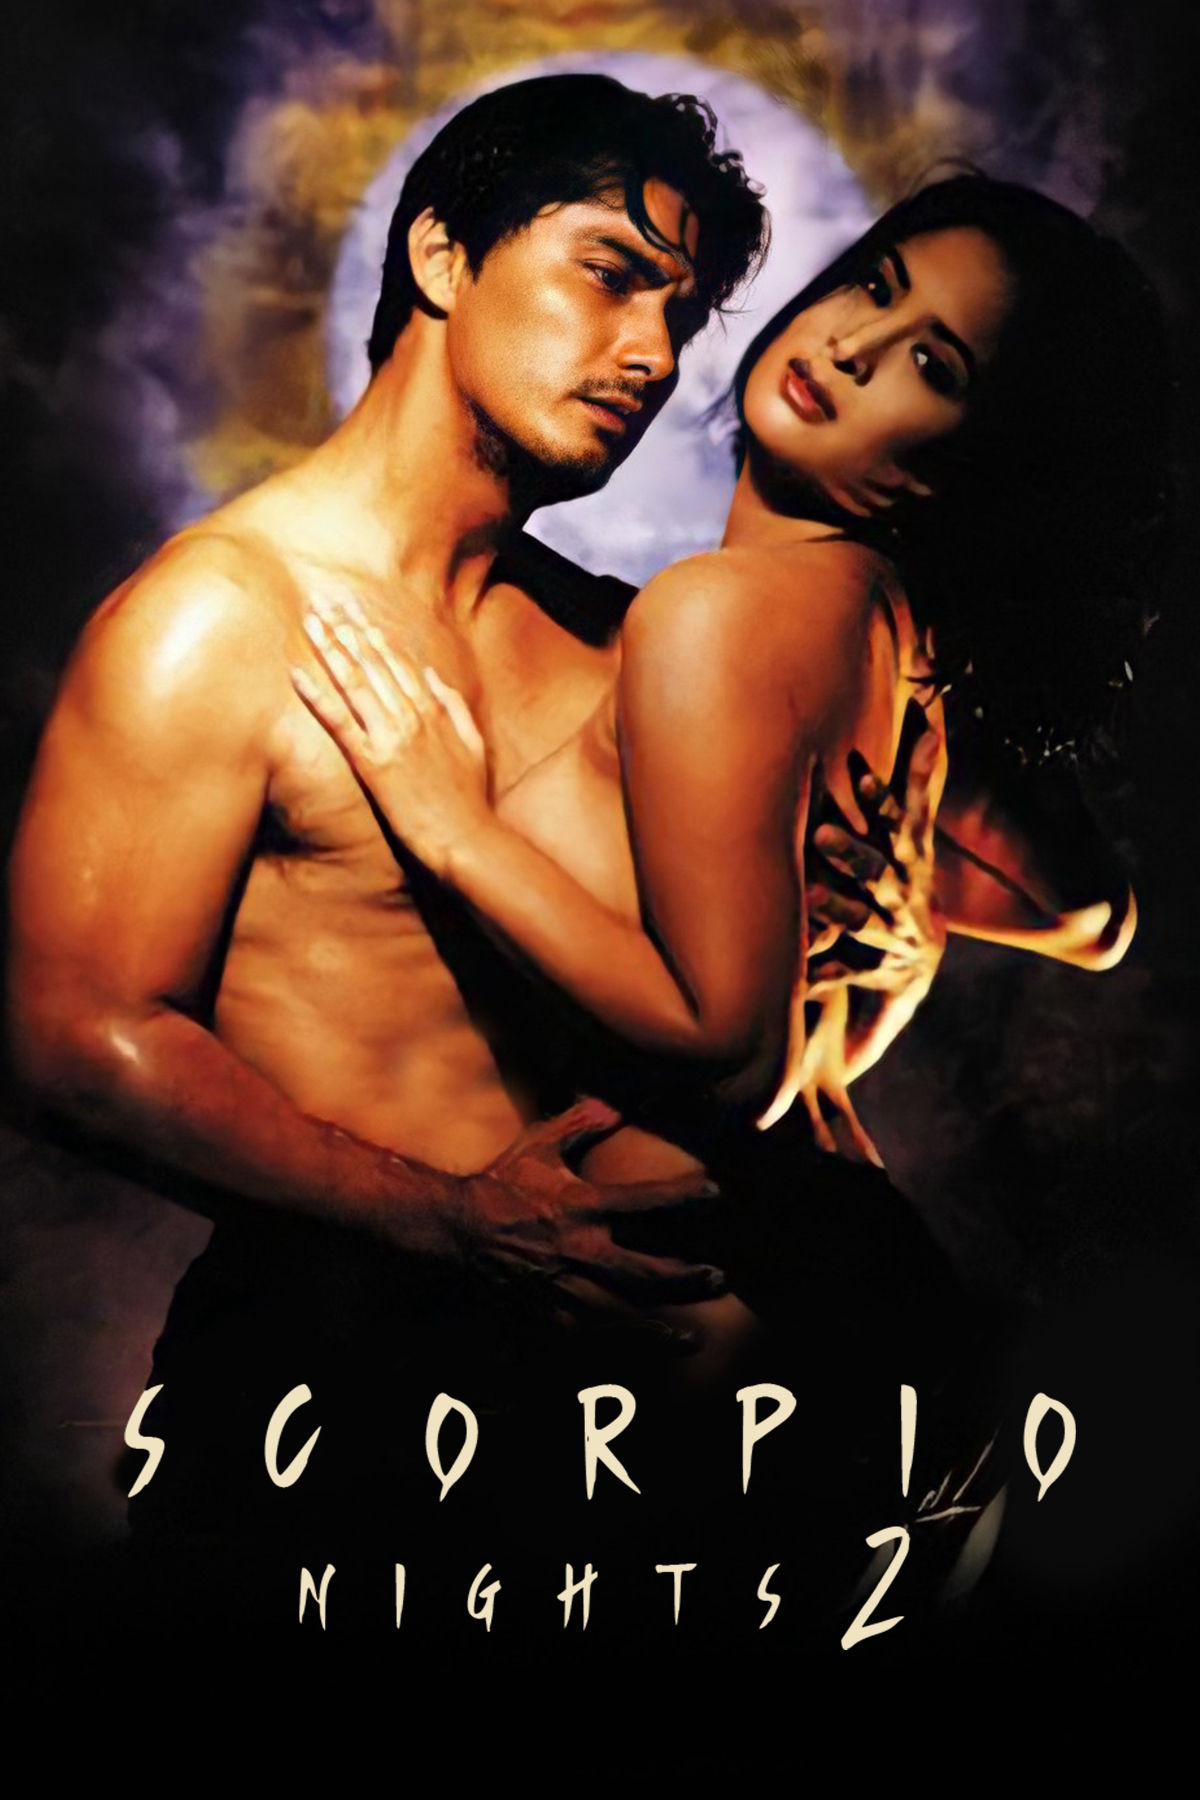 Scorpio Nights 2 (1999) Screenshot 2